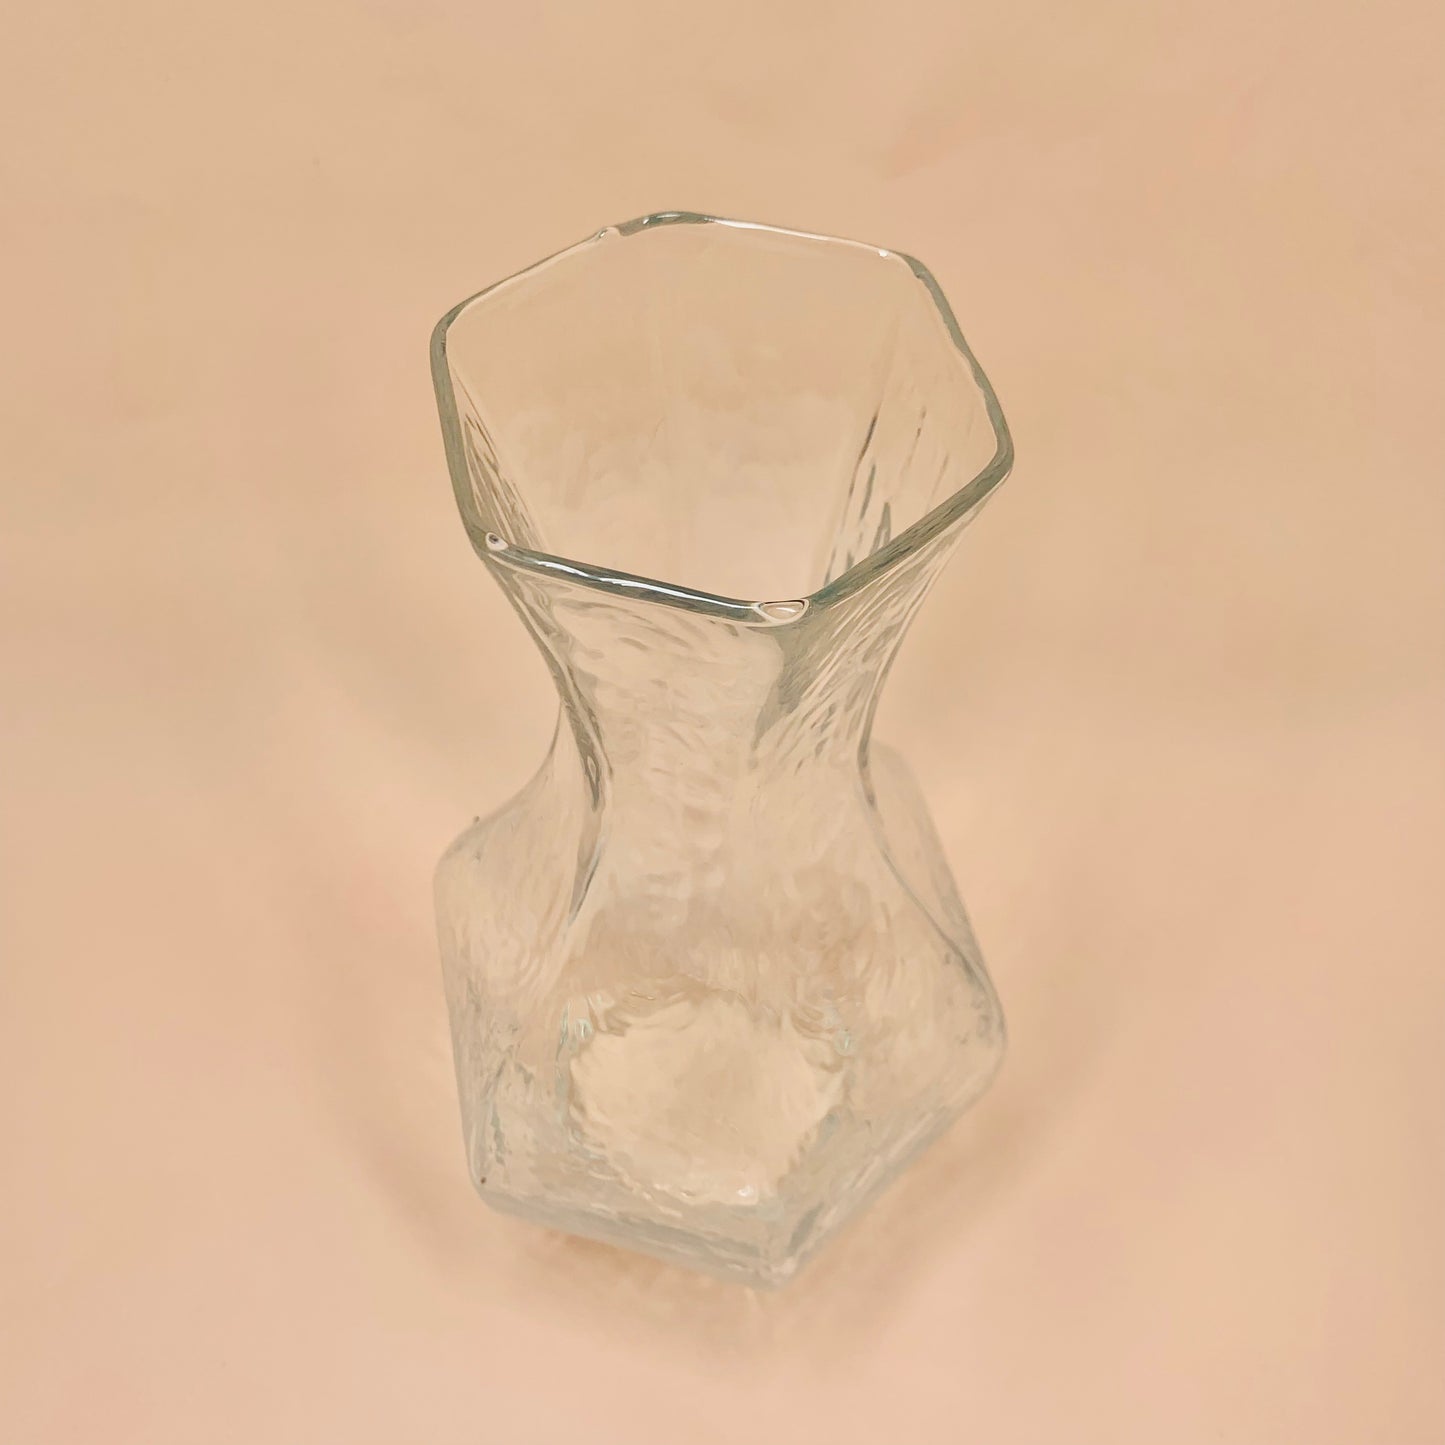 MCM Sea of Sweden Glasbruk glass vase